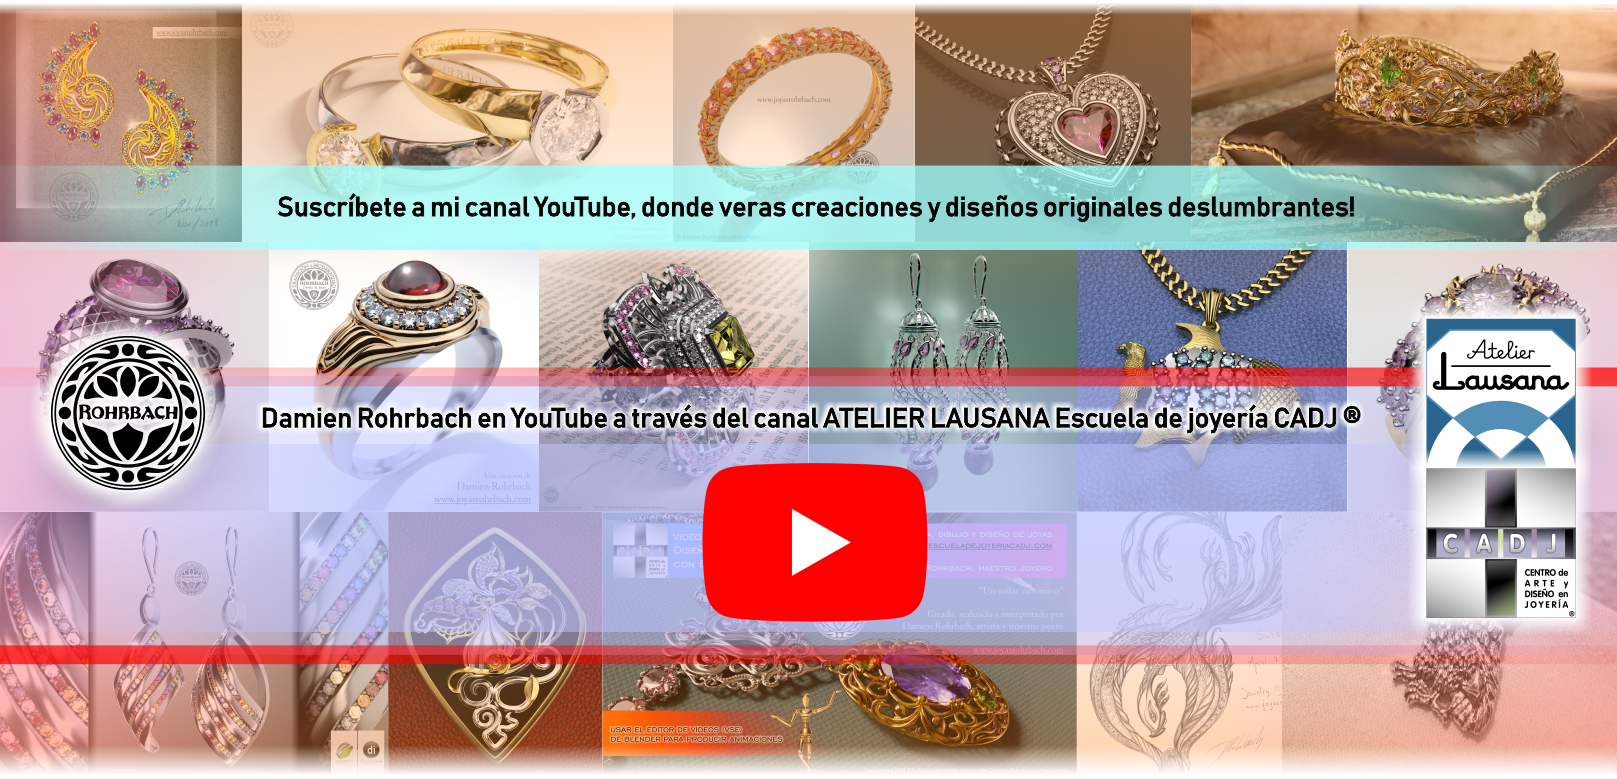 Damien Rohrbach diseñador de joyas en YouTube a través del canal Atelier Lausana Escuela de joyería CADJ